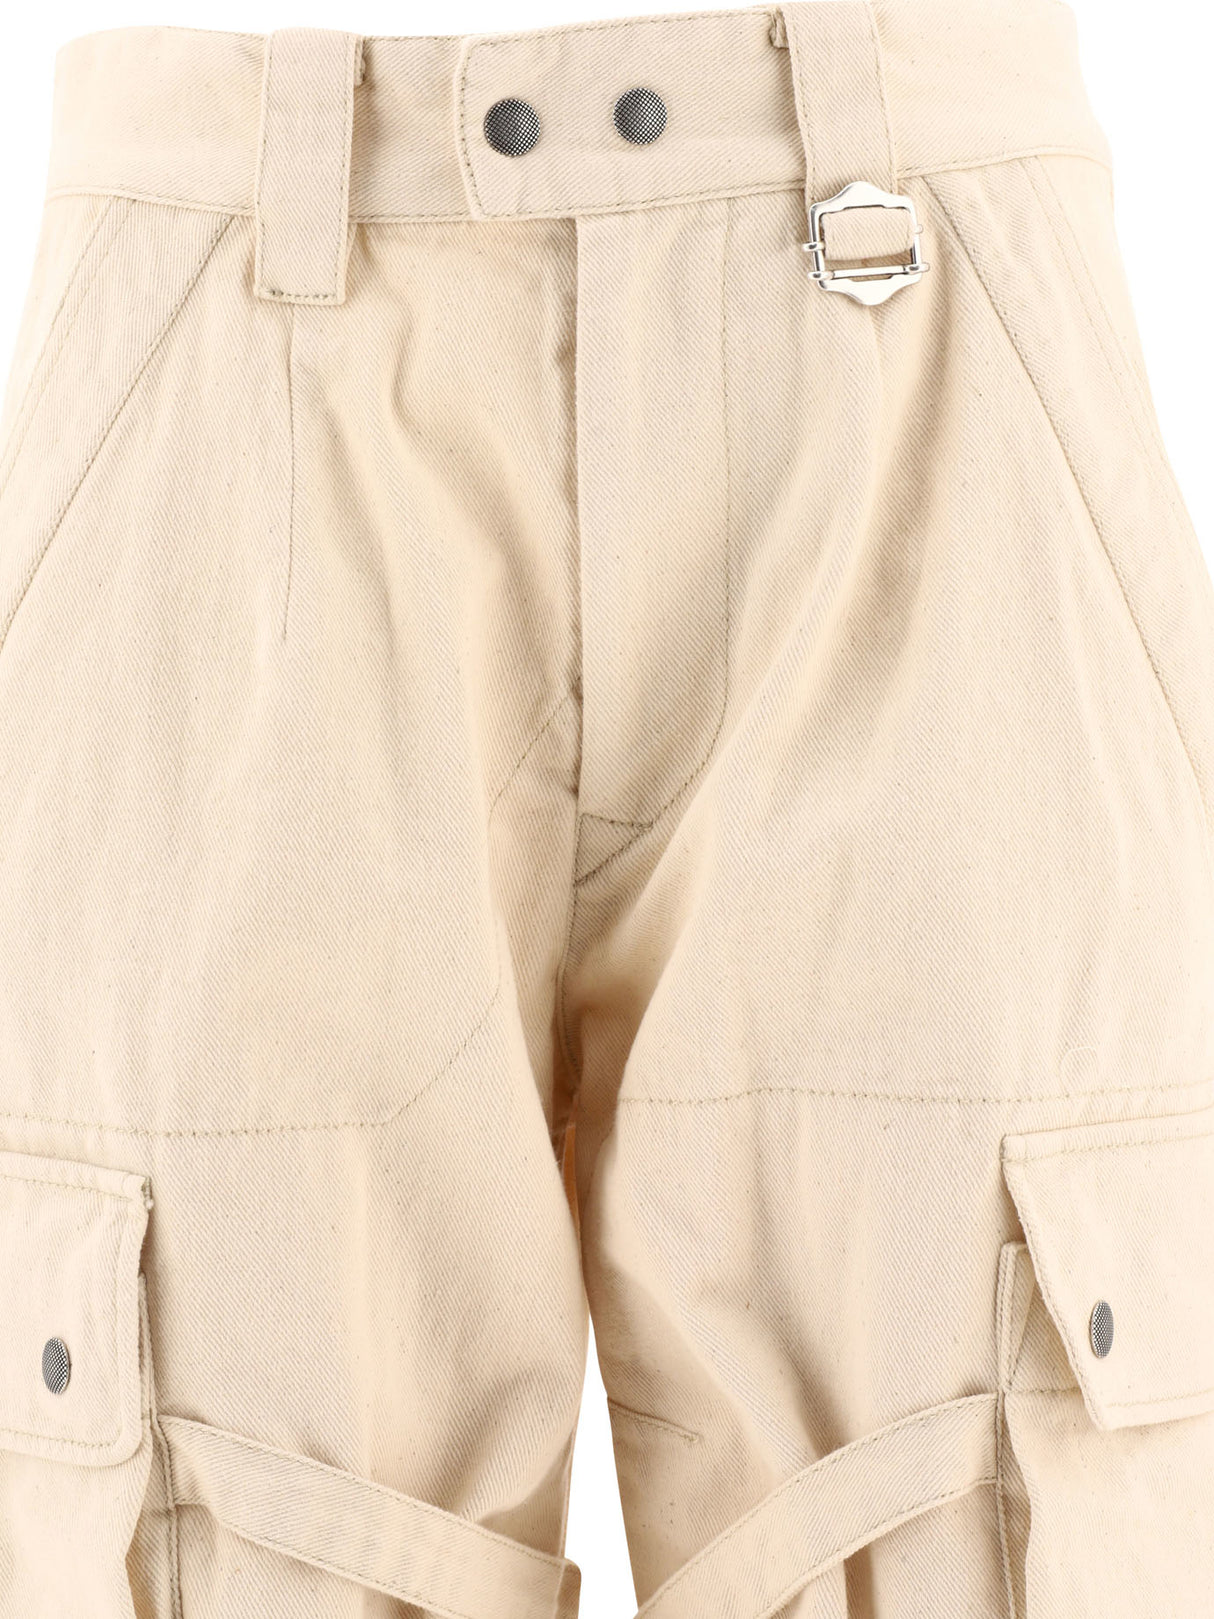 ISABEL MARANT ETOILE SS23 Women's Beige Cargo Trousers - Regular Fit